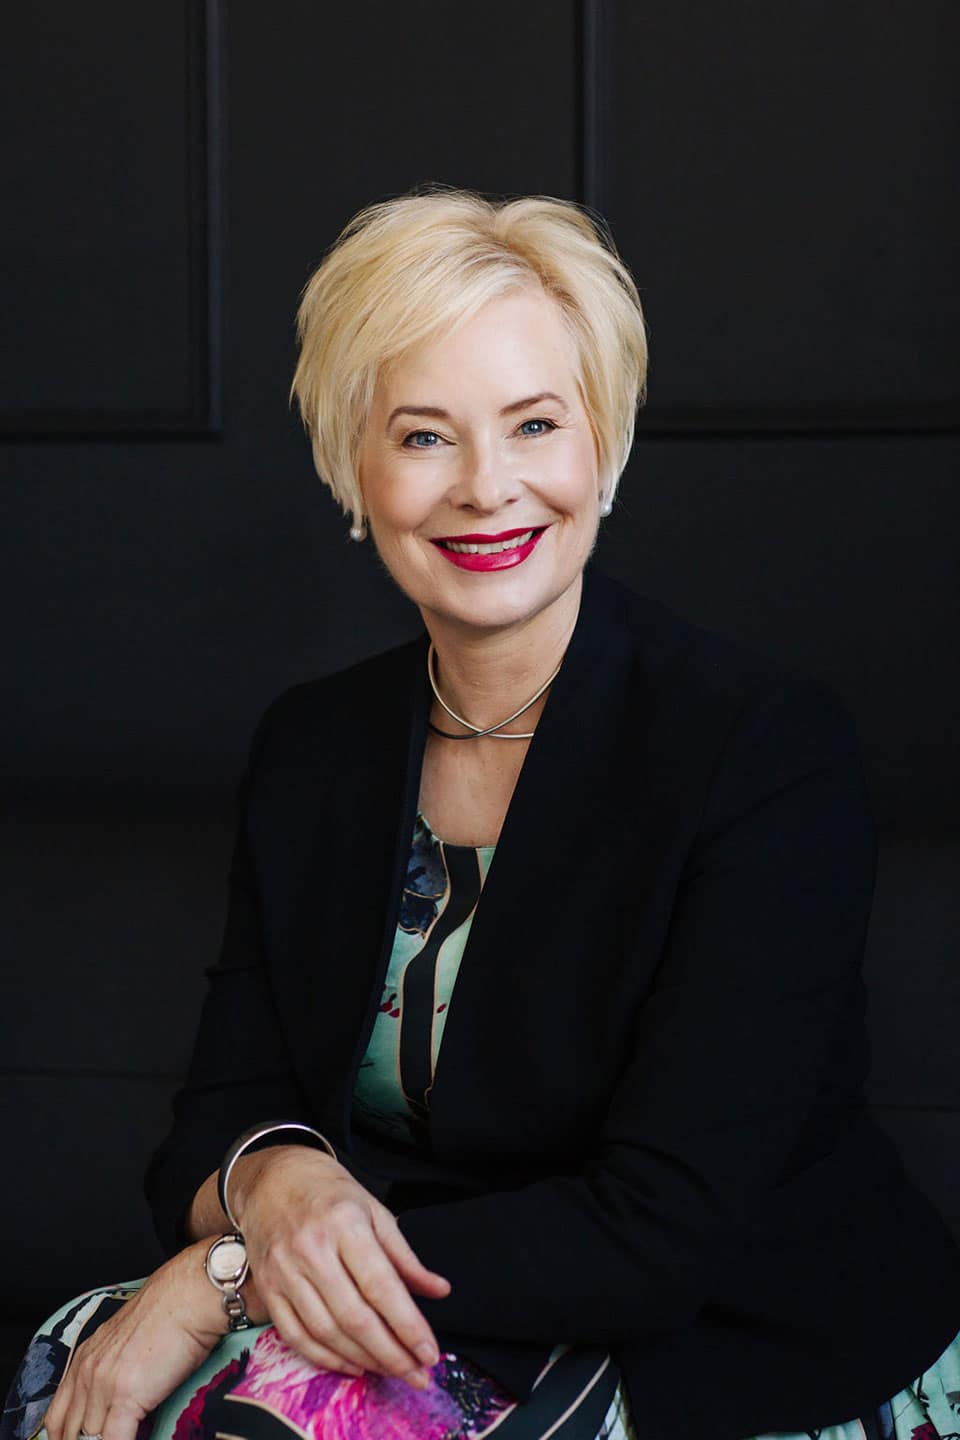 Dr. Karen Morley